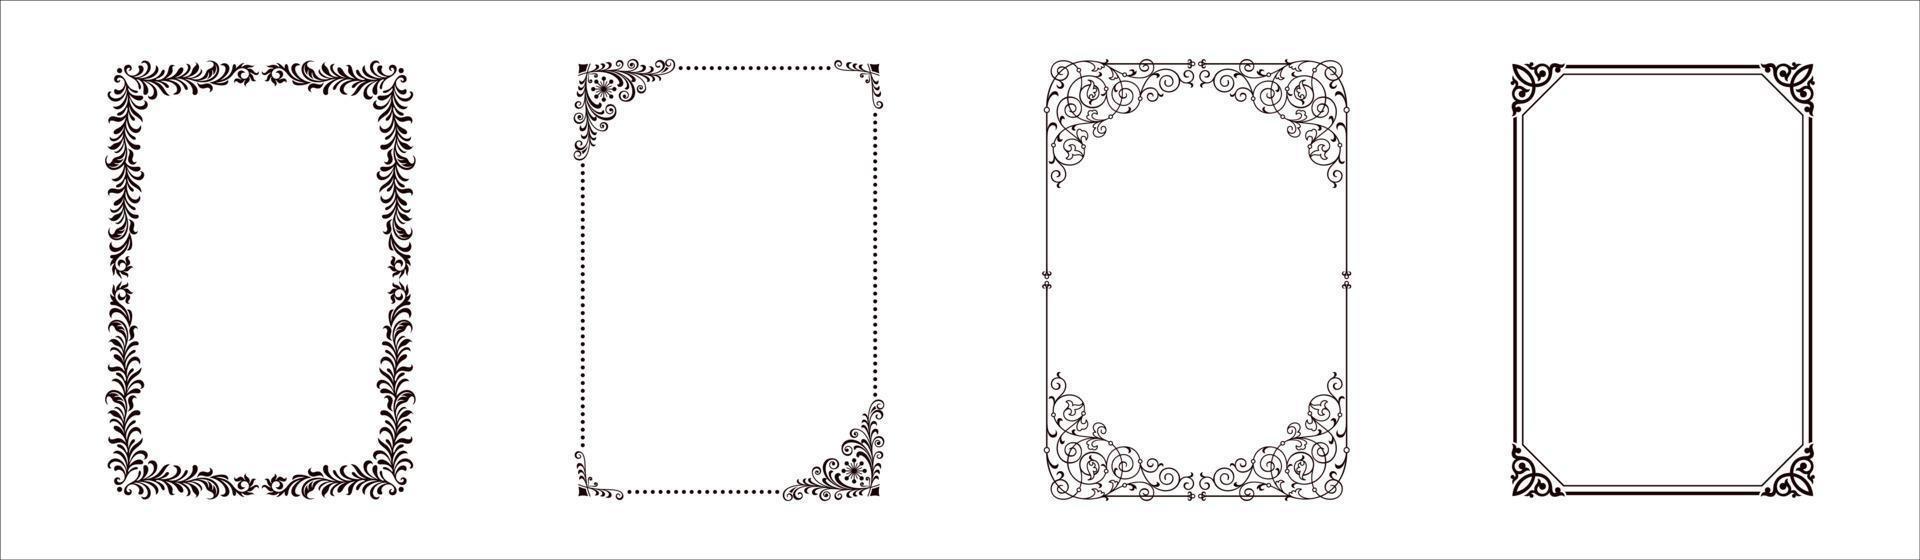 marcos decorativos y bordes set vector